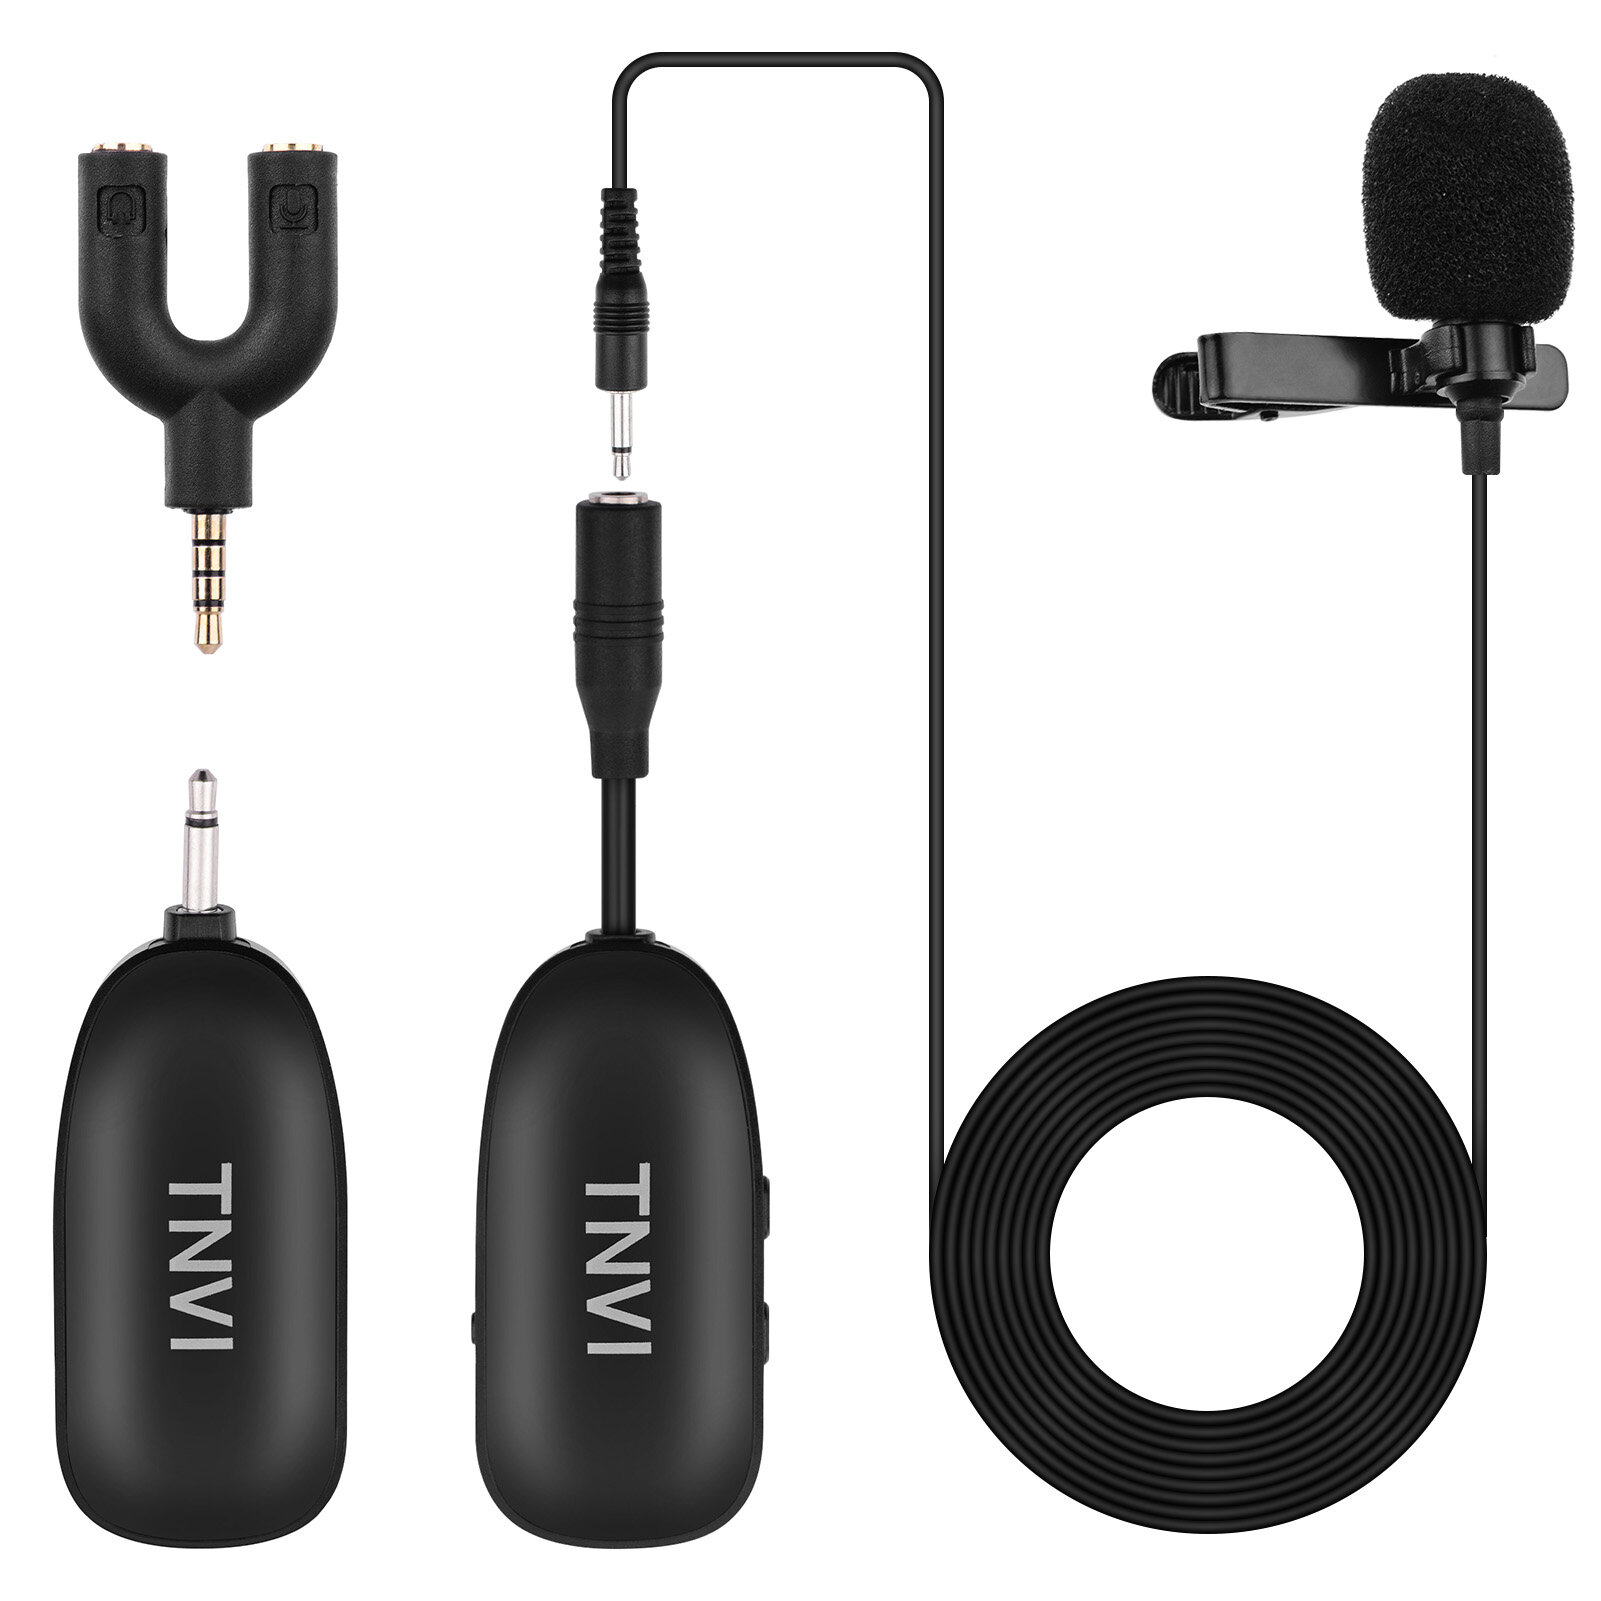 TNVI V1 2.4G Sistema inalámbrico Micrófono con transmisor recargable Reveiver Lapel Lavalier Micrófono para computadora